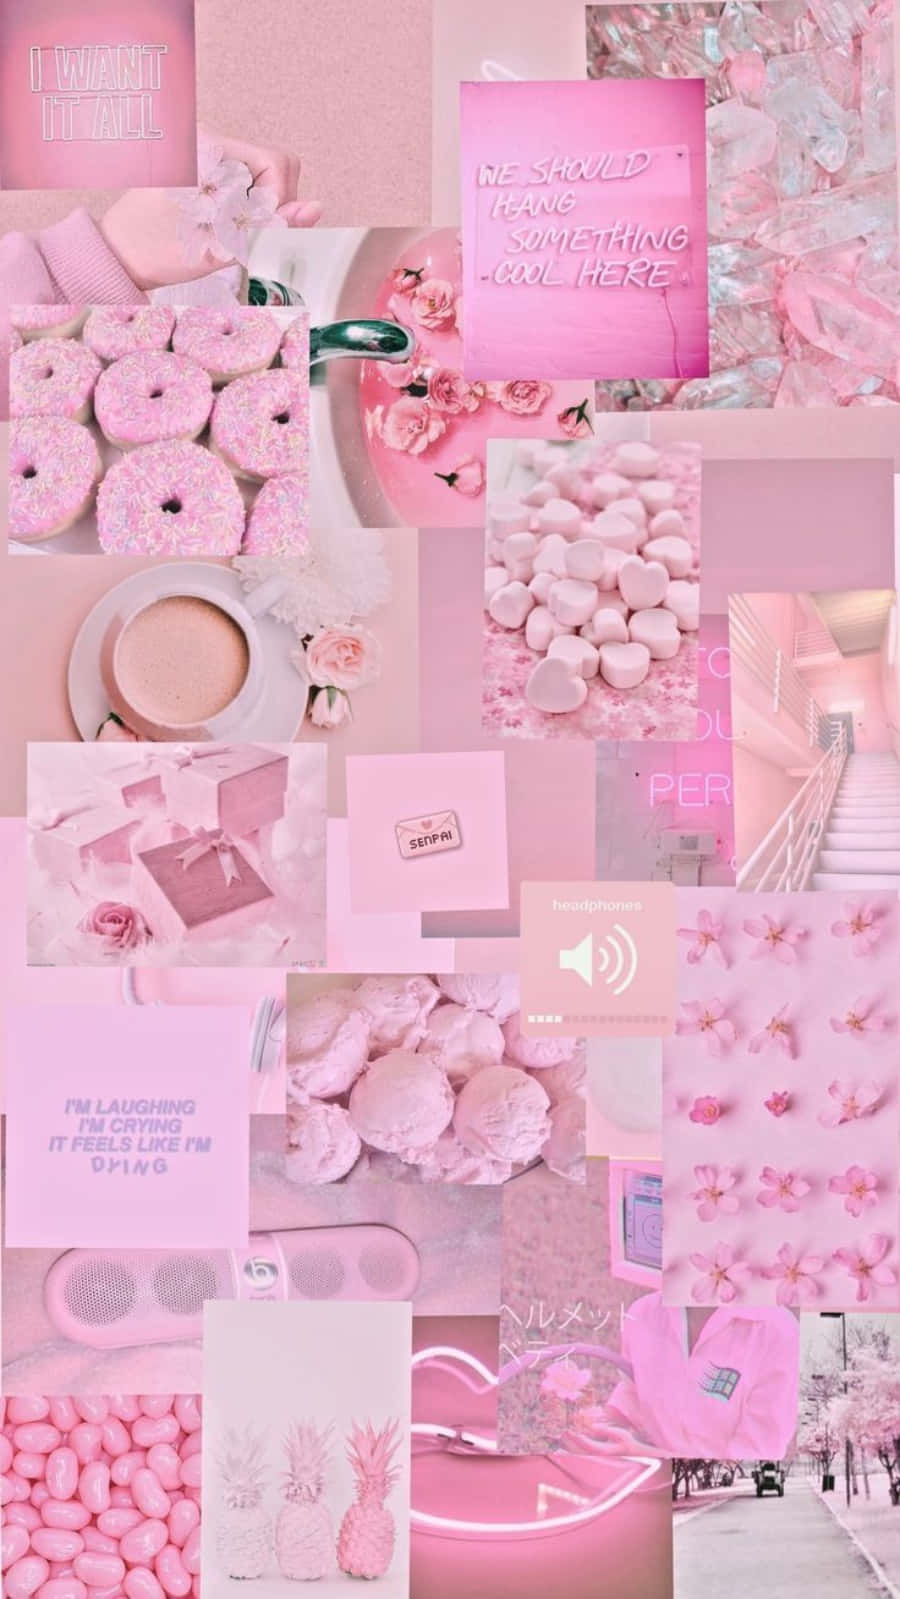 Nếu bạn là một người yêu thích màu hồng, chắc chắn bạn sẽ thích bộ sưu tập hình nền tường ảo hồng của chúng tôi. Với các mẫu hình ảnh tươi sáng và đầy sáng tạo, bộ sưu tập này sẽ giúp bạn thêm sự cá tính vào căn phòng của mình.